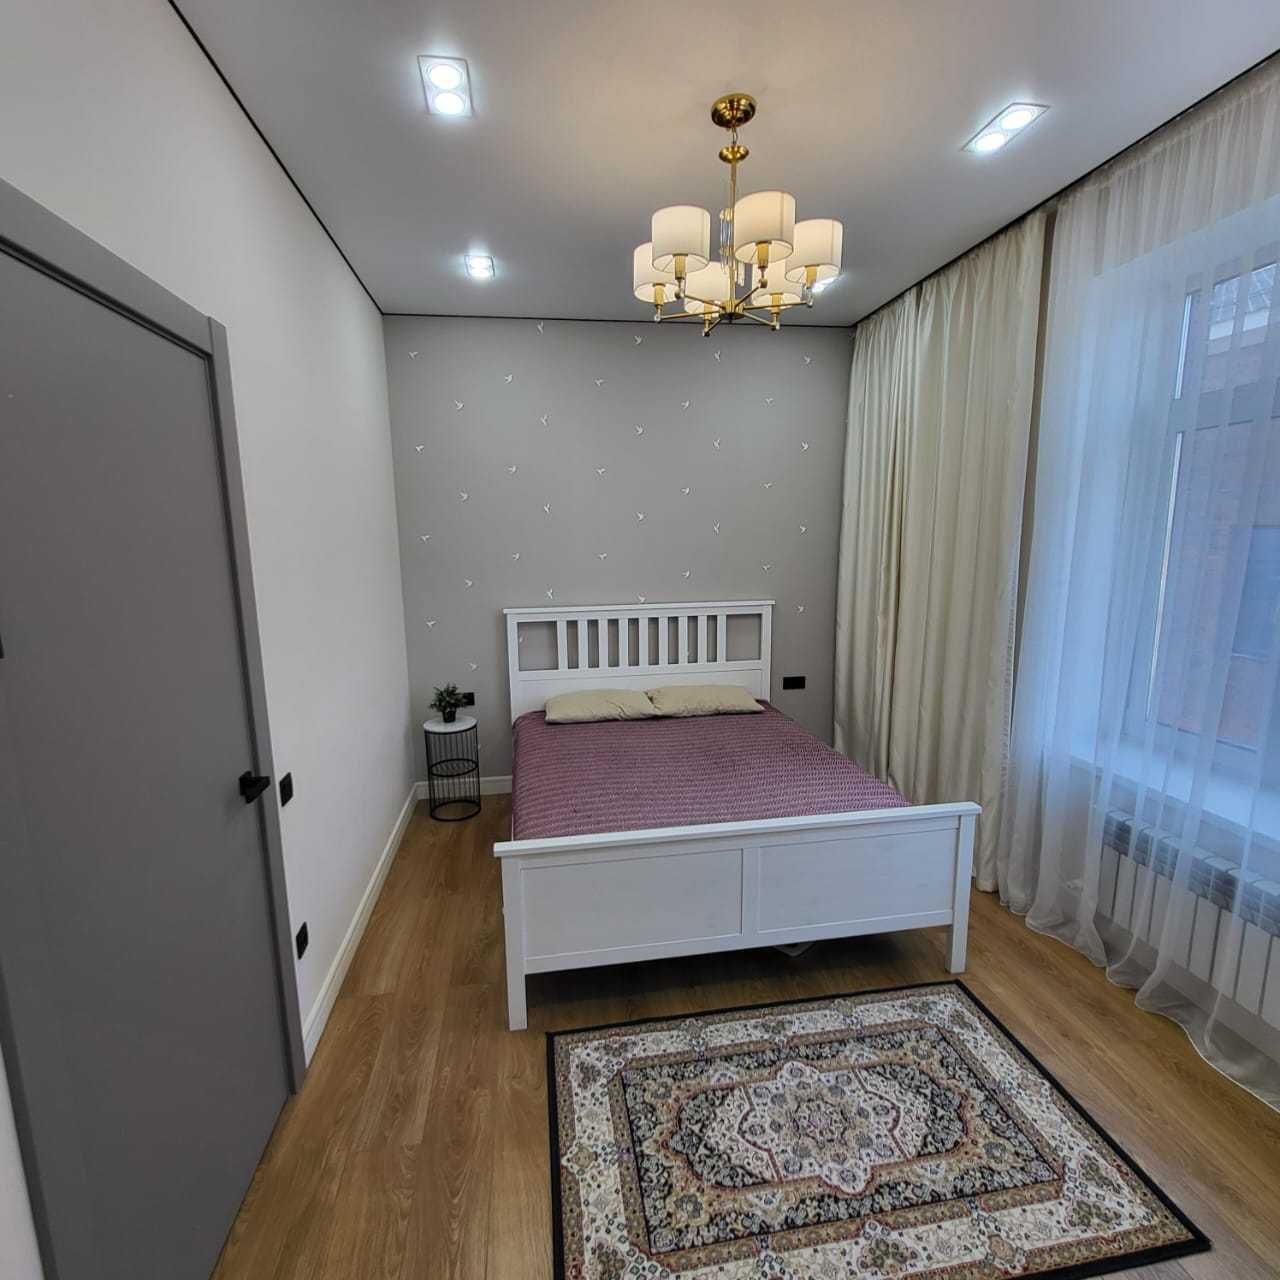 Продам четырехкомнатную квартиру в мкрн Астана, 7 мкрн, по Московской